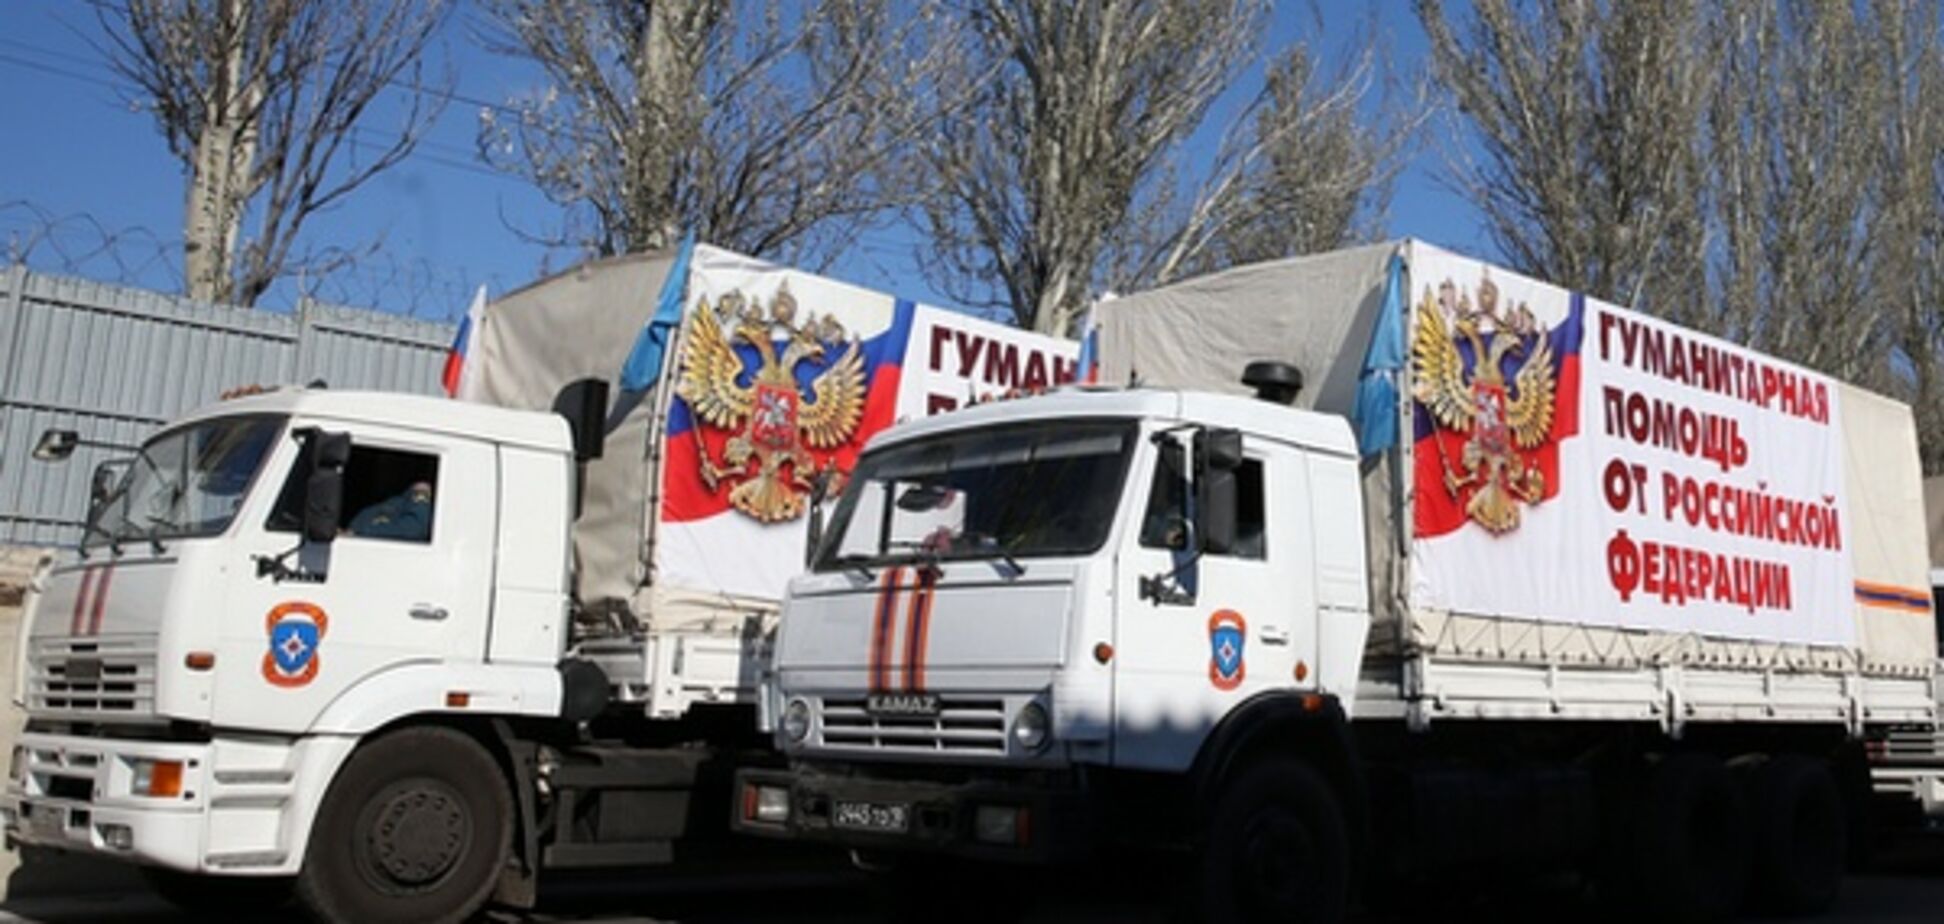 З подарунками до Дня Незалежності: Путін відправив на Донбас значний 'гумконвой'